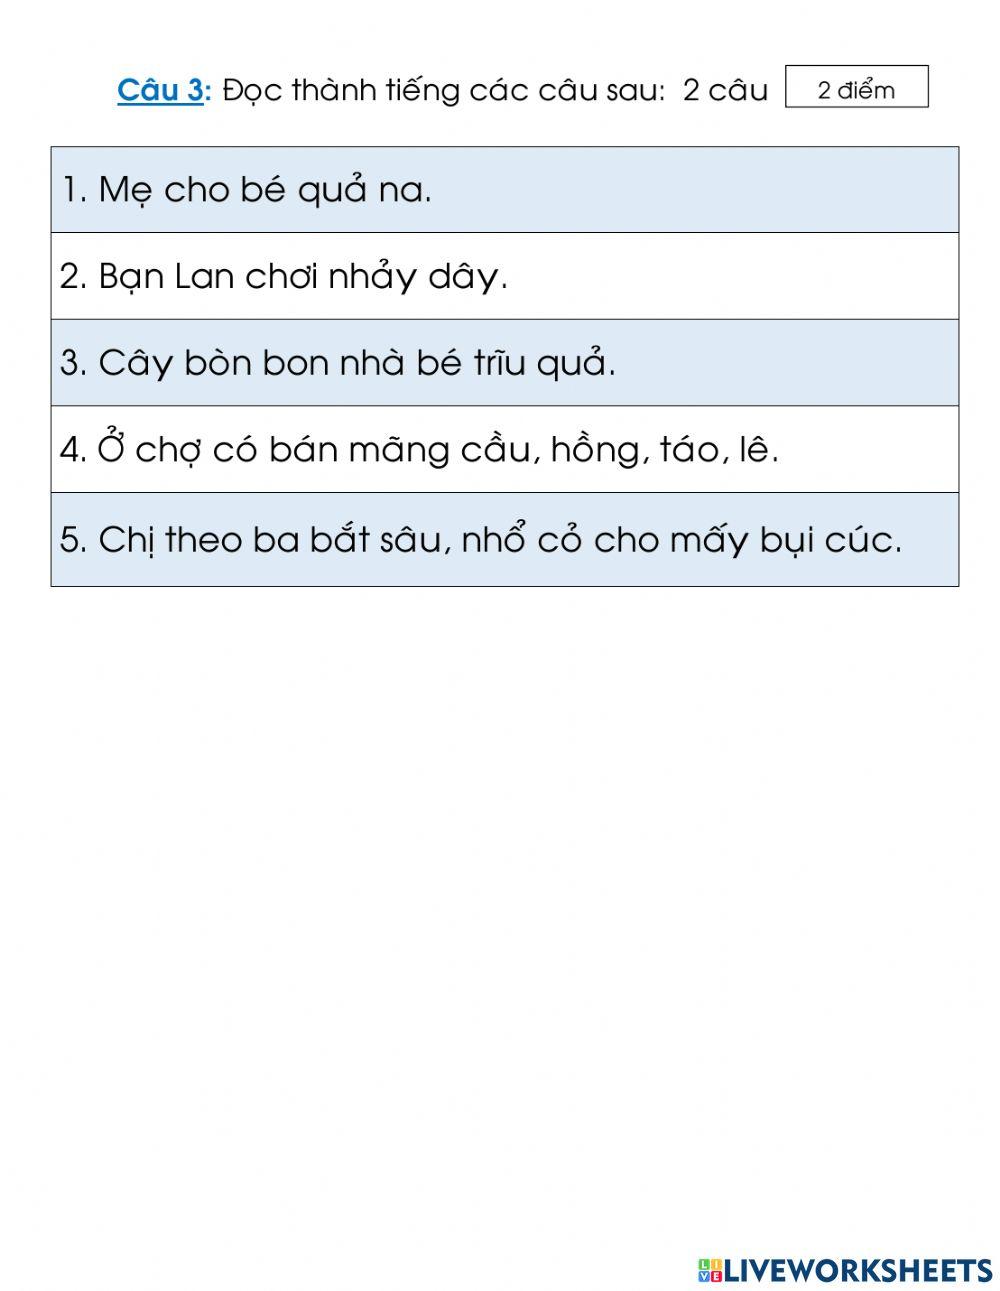 Tiếng Việt đọc